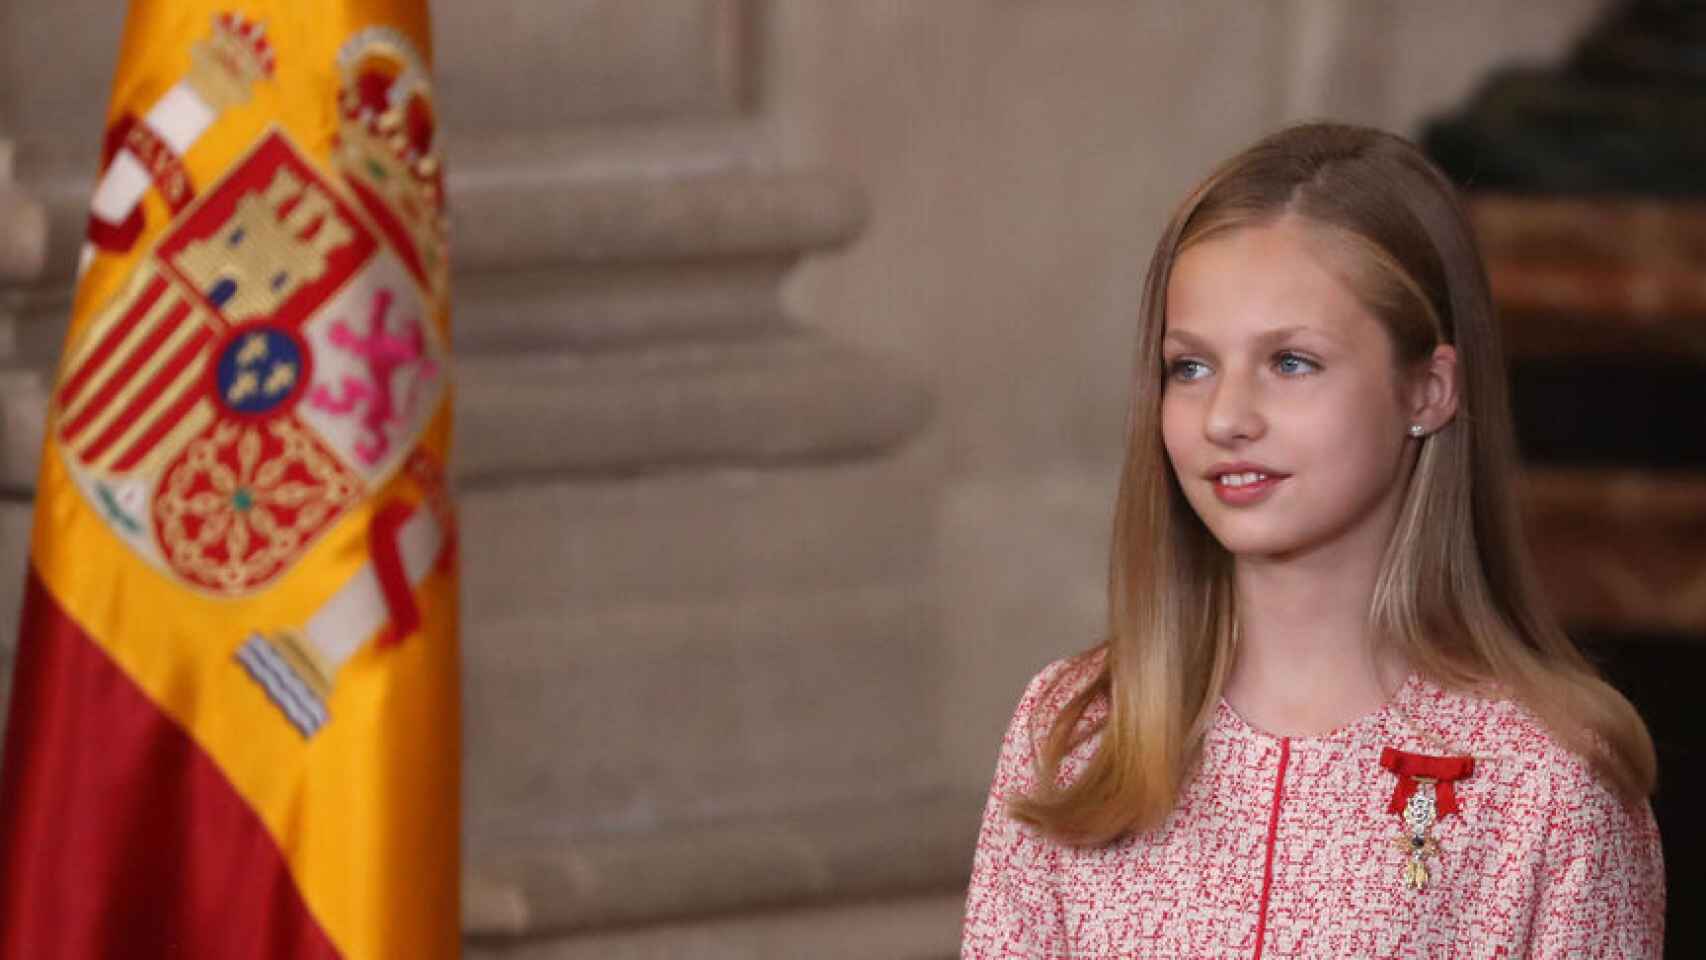 La princesa Leonor presidirá los premios Princesa de Asturias el próximo viernes 18 de octubre.